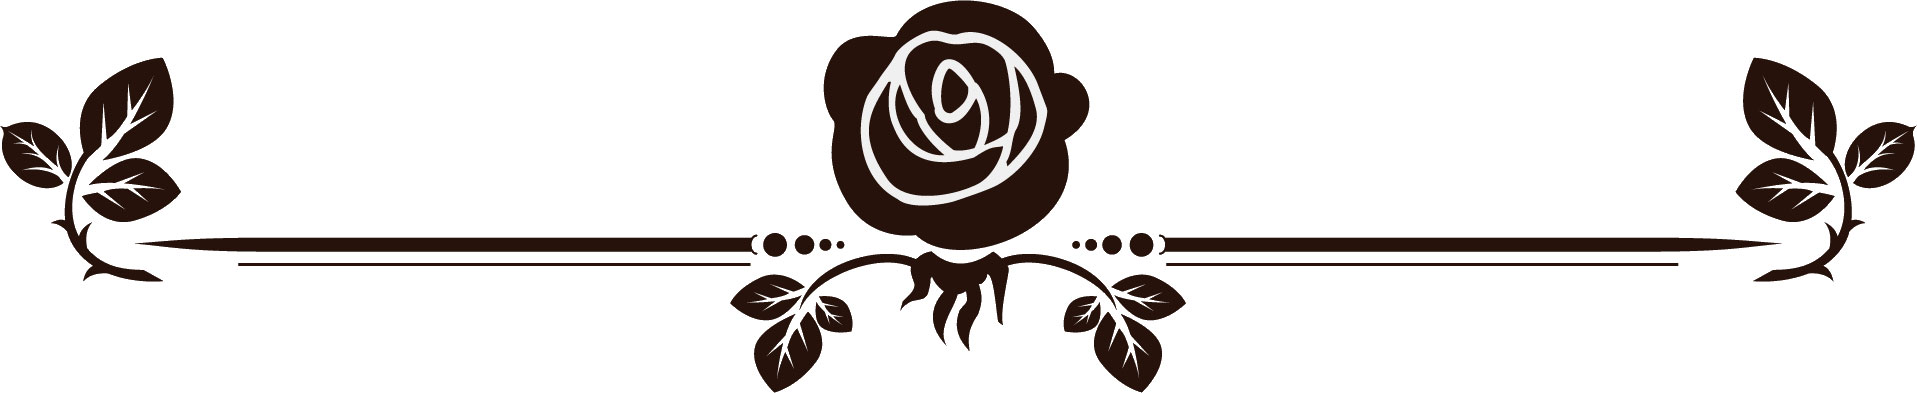 花のイラスト フリー素材 白黒 モノクロno 361 白黒 バラ模様